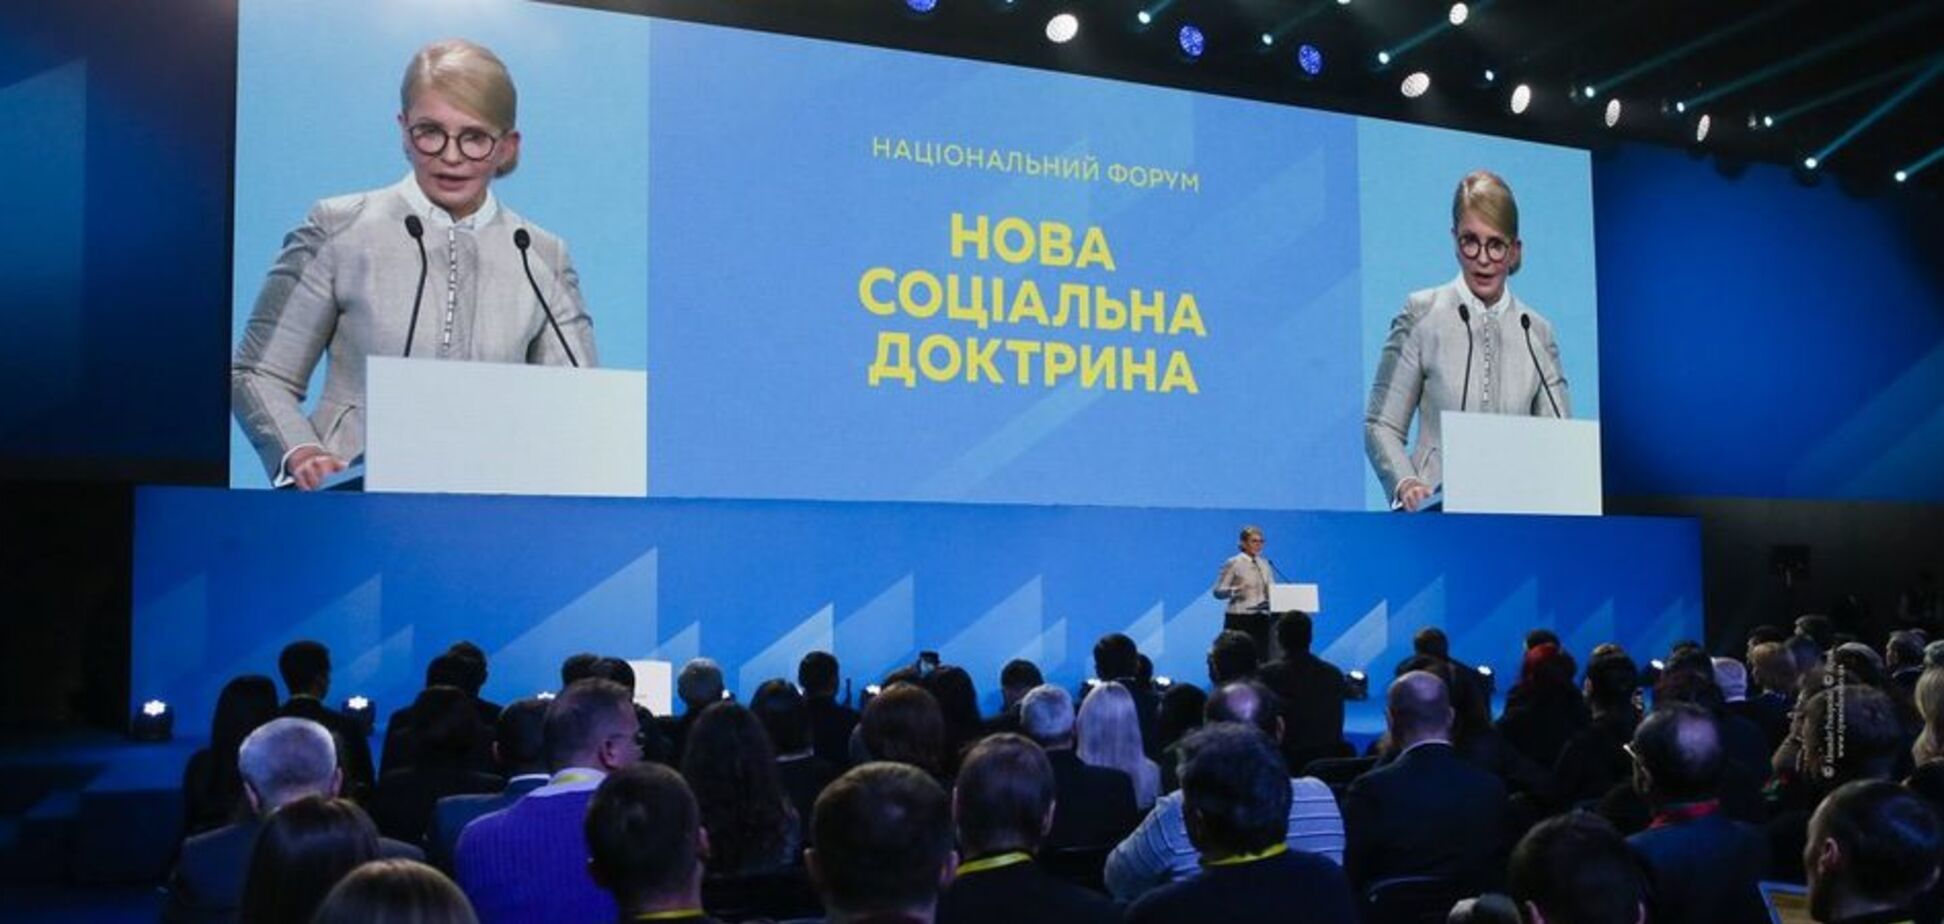 Тимошенко: финансирование образования – это инвестиции в человеческий капитал и гарантии национальной безопасности